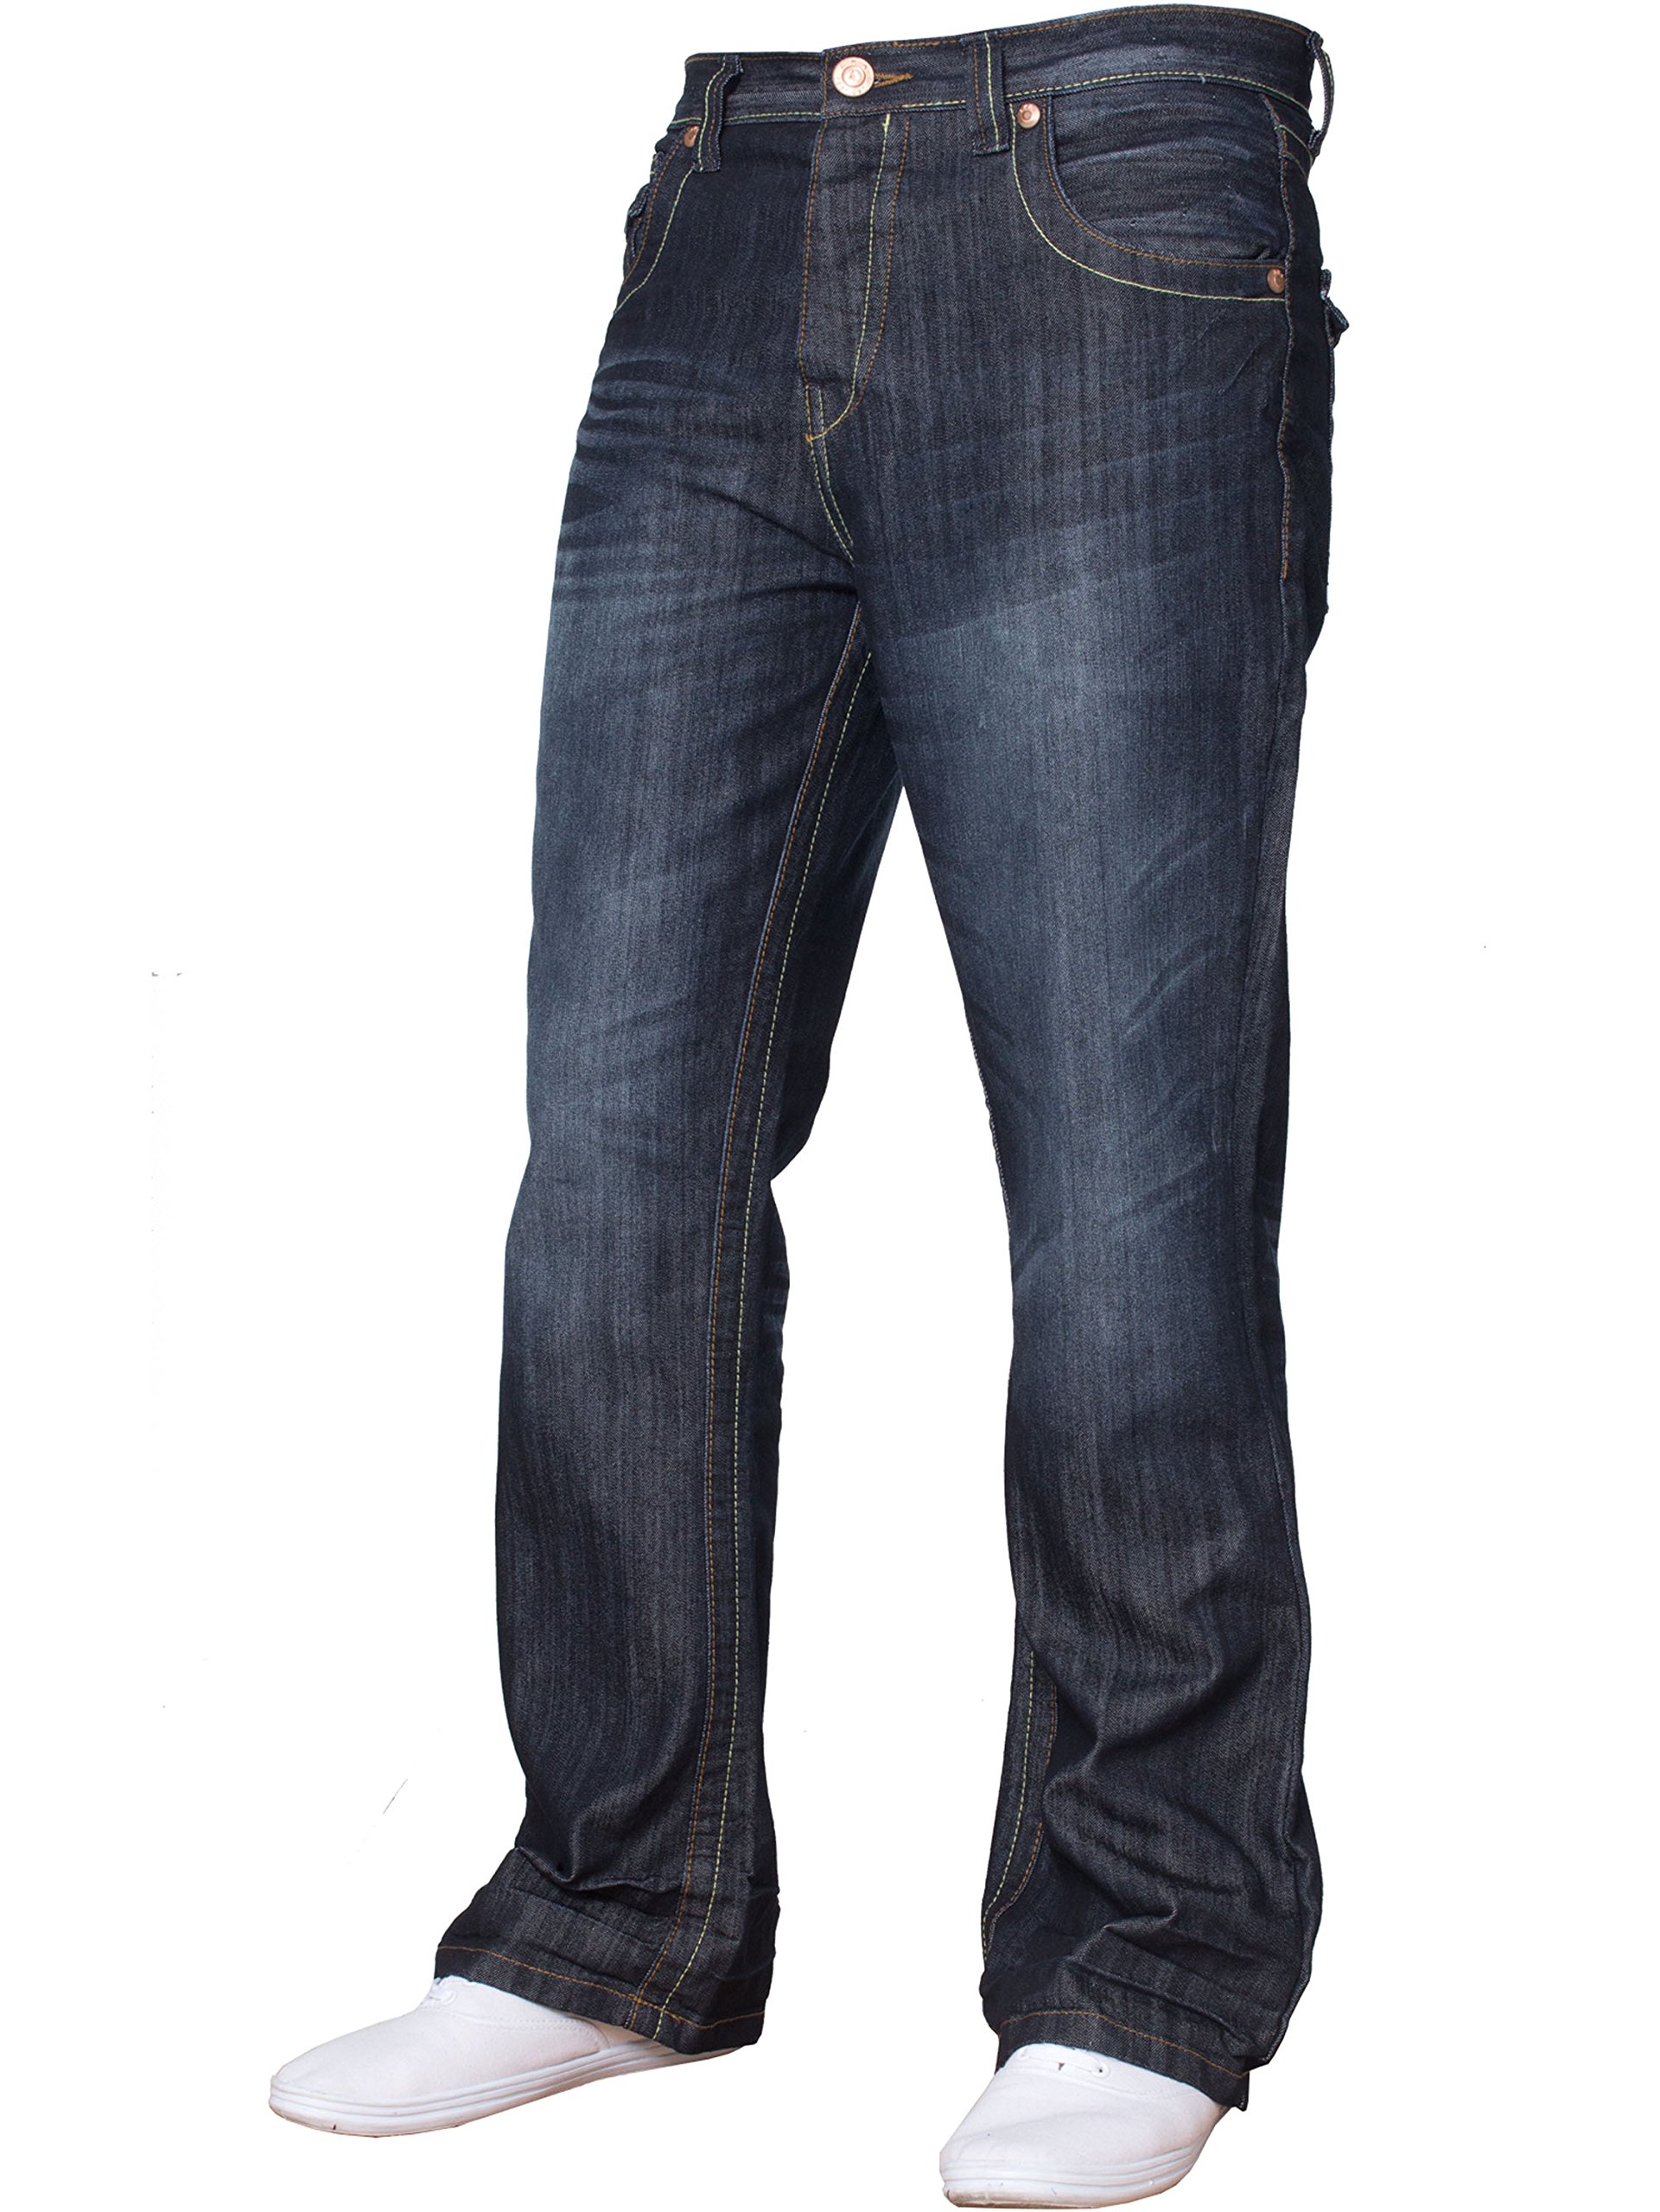 BNWT Herren-Jeans, Bootcut, ausgestellt, große King Size, weites Bein, Blau, Denim Gr. 44 W/32 L, Dunkel gewaschen A31